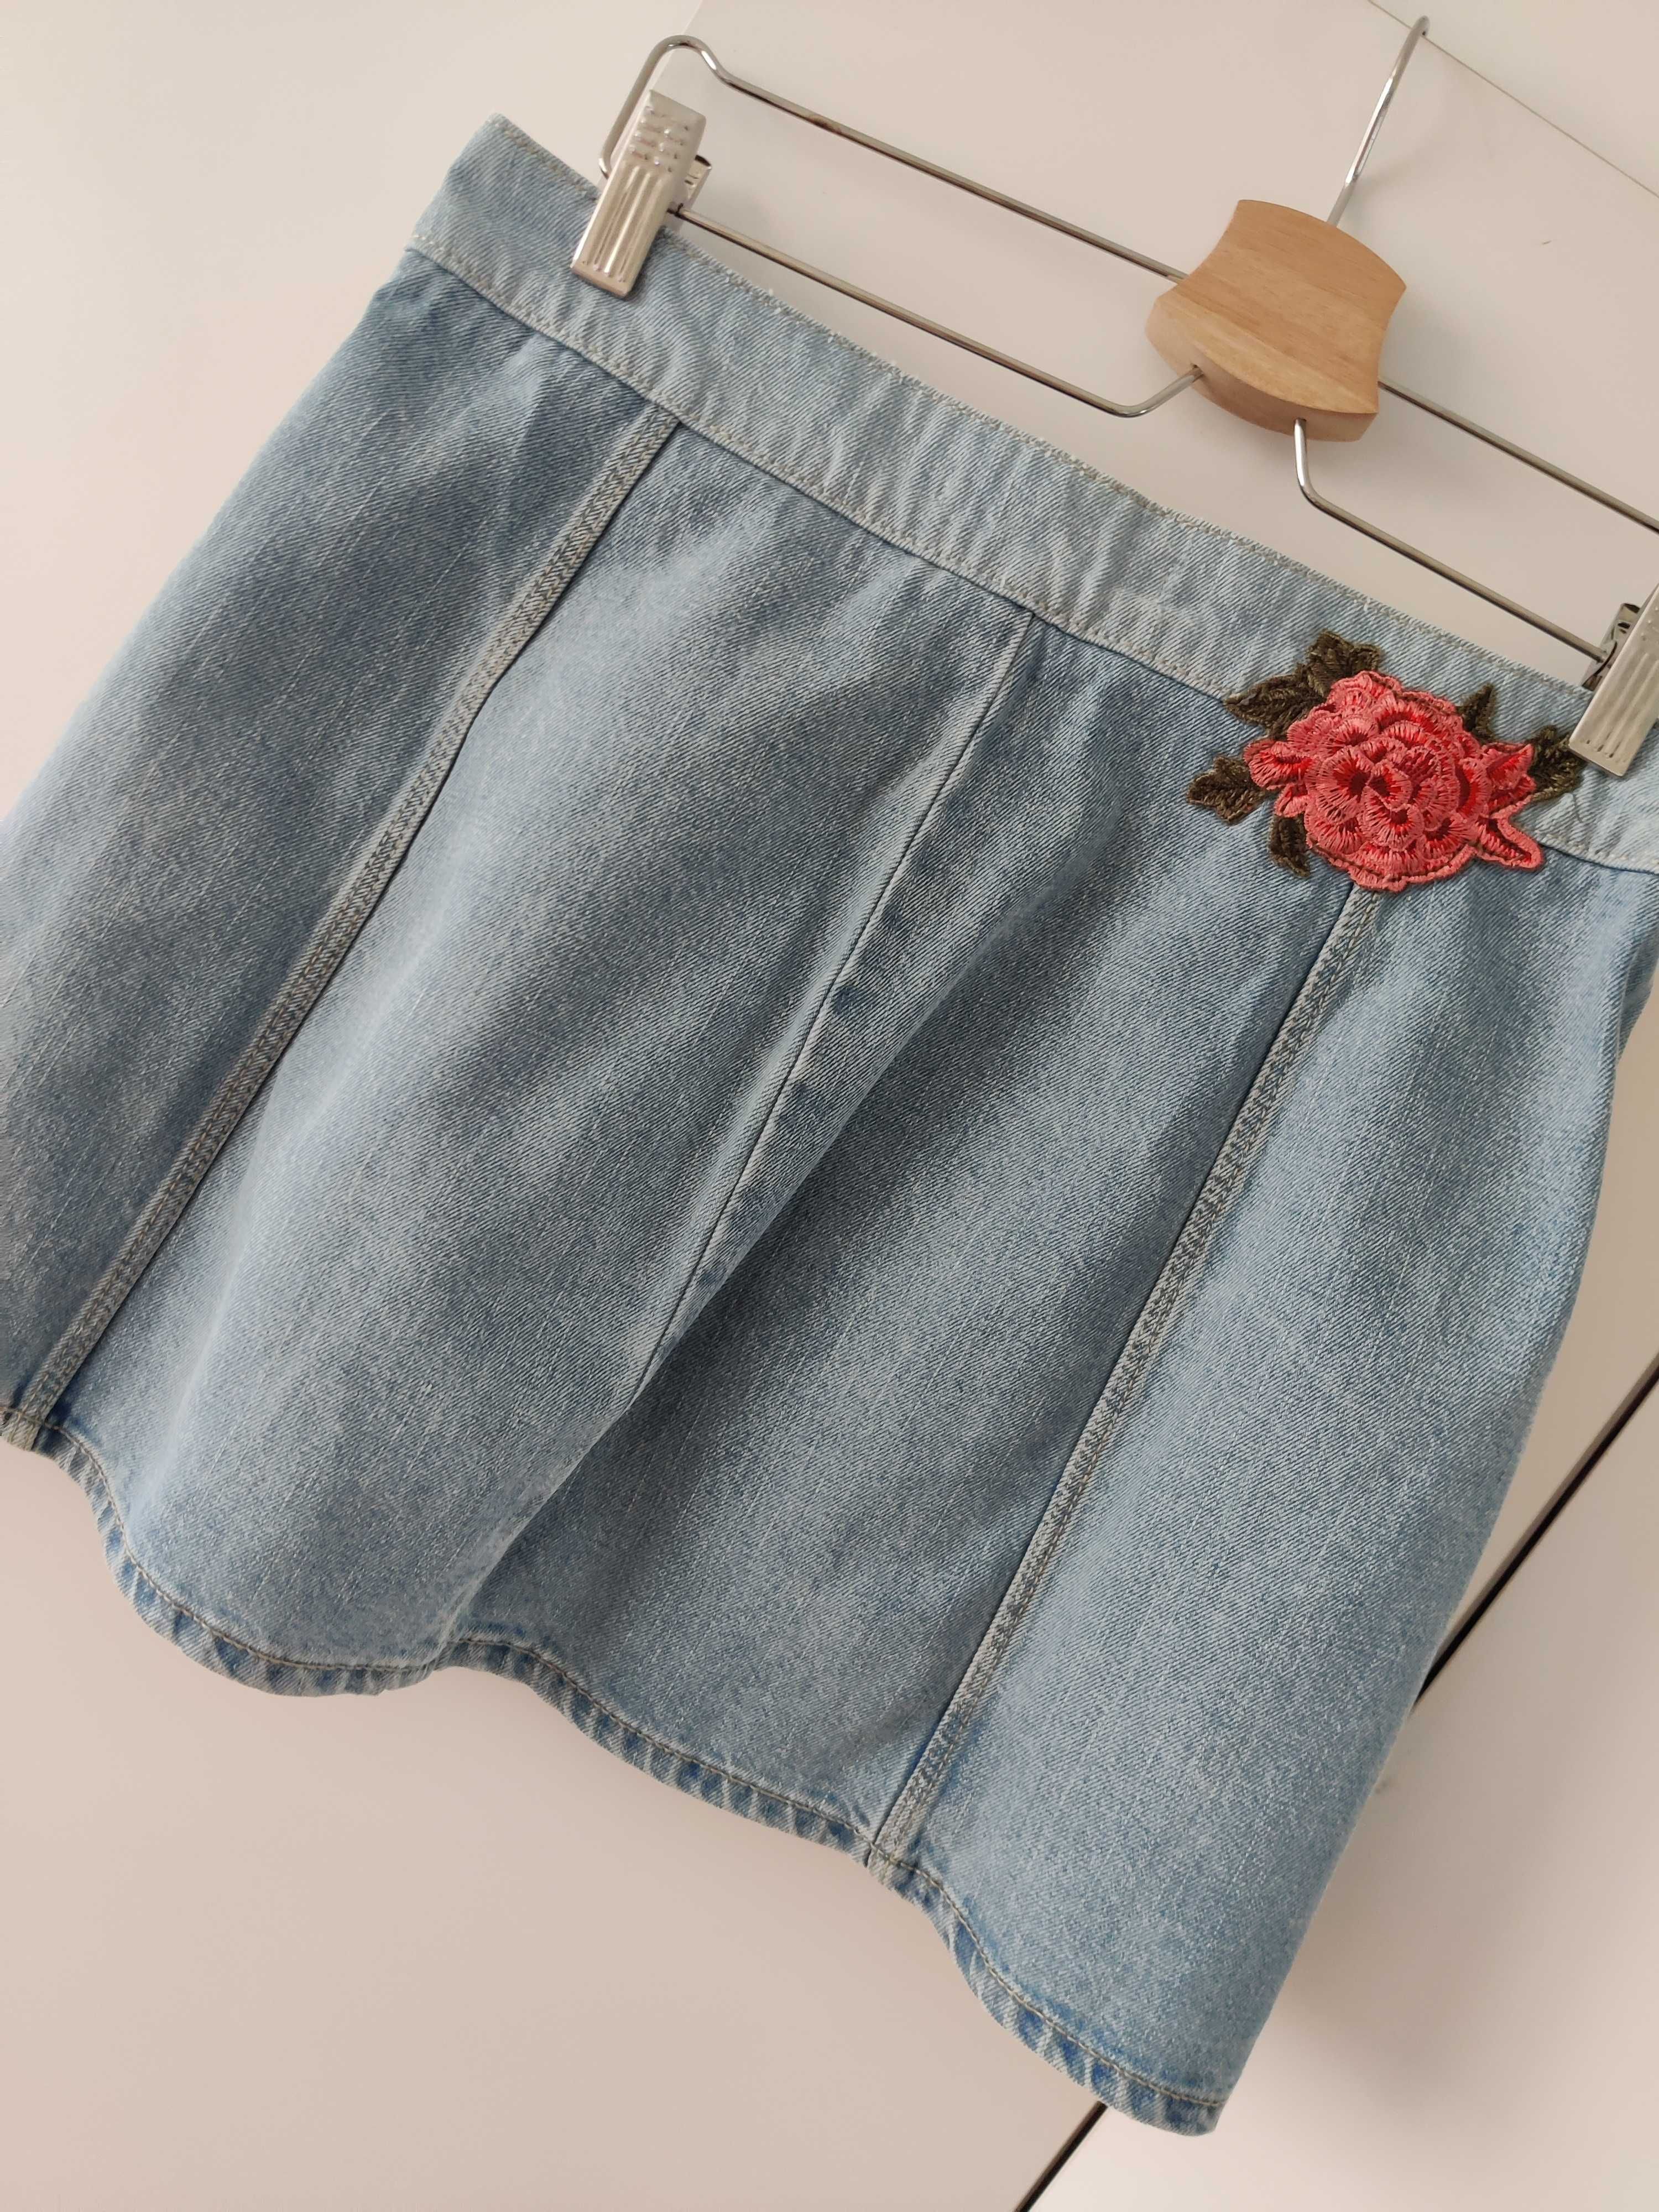 Krótka jeansowa spódnica Zara trafaluc rozmiar S